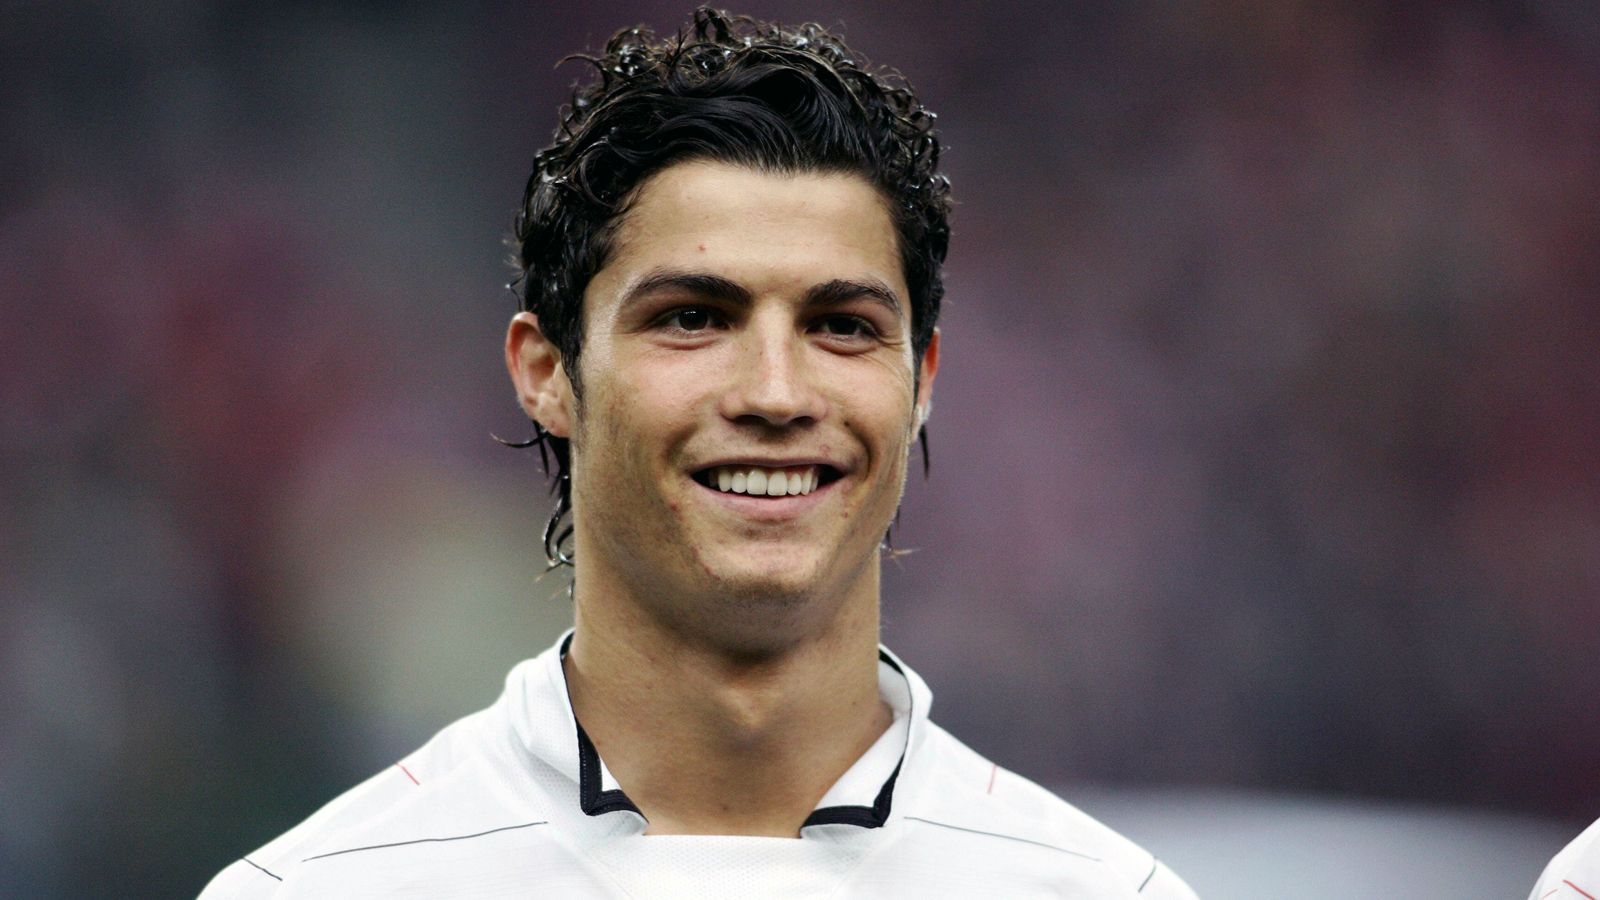 
                <strong>Cristiano Ronaldo bei Manchester United</strong><br>
                Bei Manchester United, wo CR7 von 2003 bis 2009 spielte, stieg der Portugiese vom Talent zum Star auf. Dort wurde er frisurentechnisch dann auch erstmals zum Trendsetter für Millionen Jugendliche. 
              